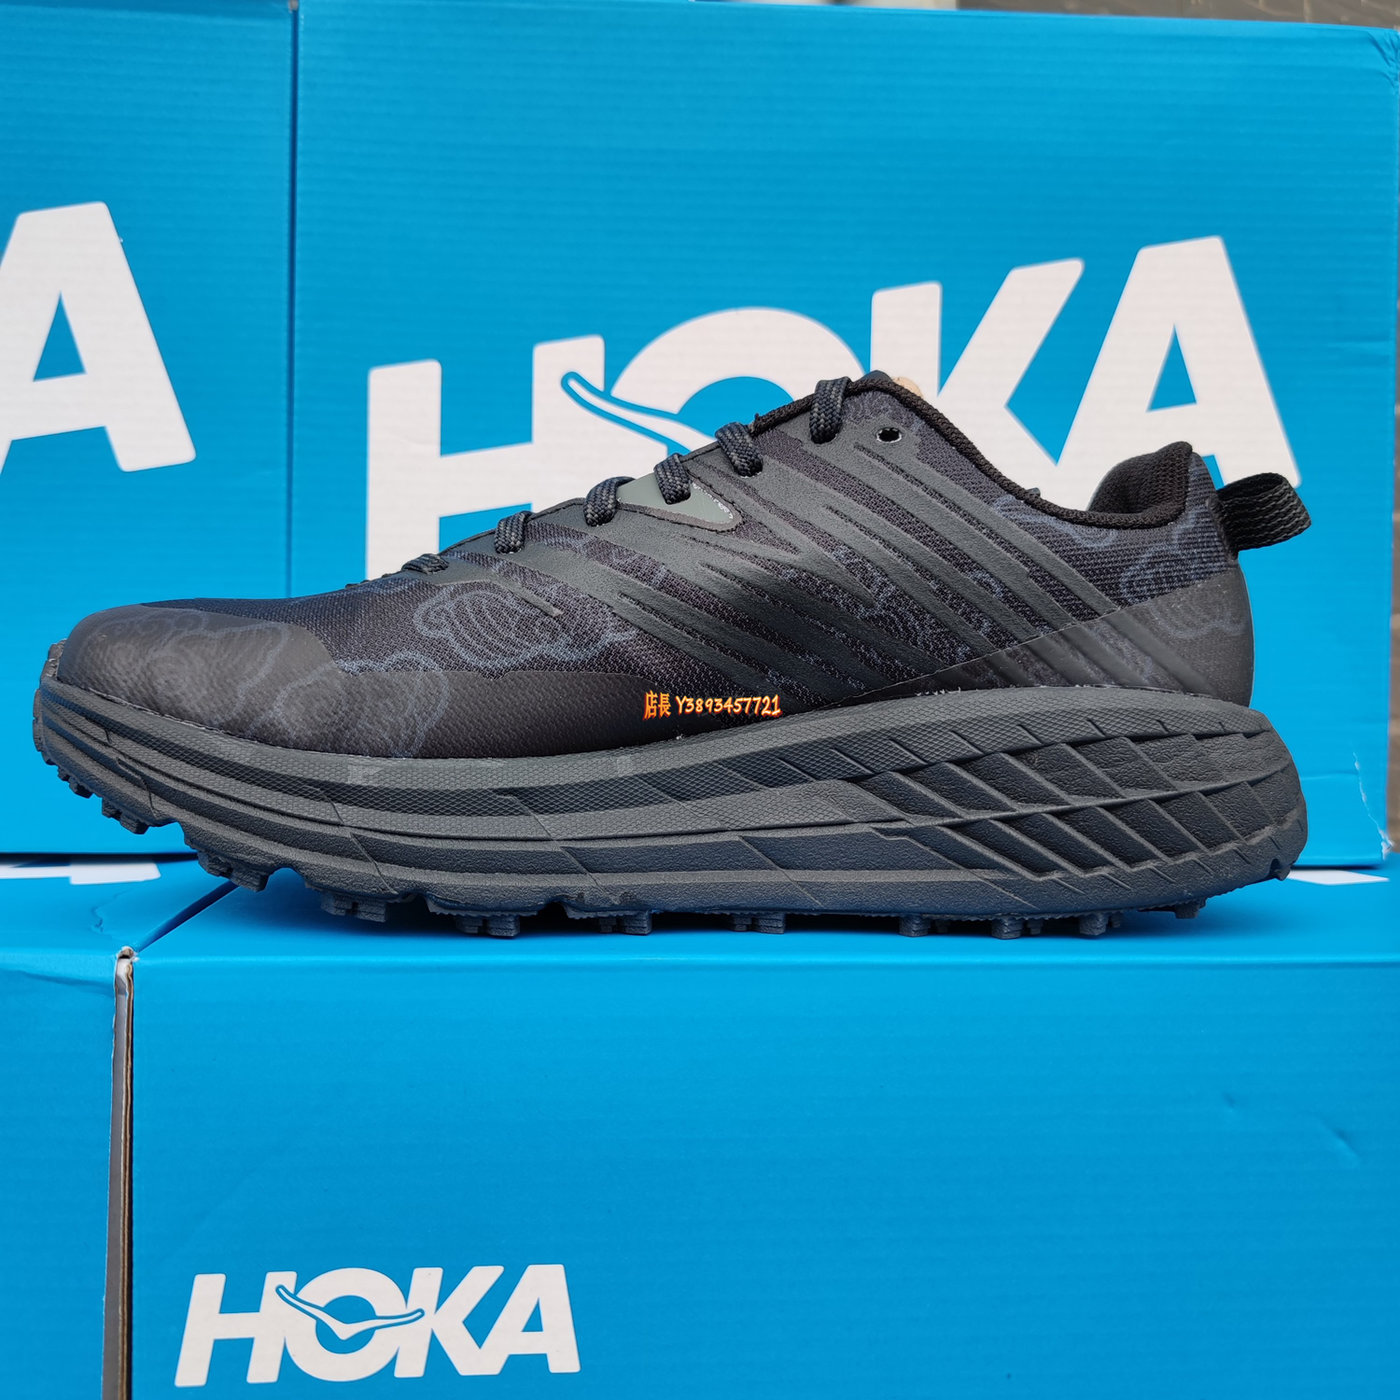 新品 正貨HOKA ONE ONE SPEEDGOAT 4 速度羊四代 路跑鞋 減震運動鞋 緩衝平穩 輕量款 專業跑鞋